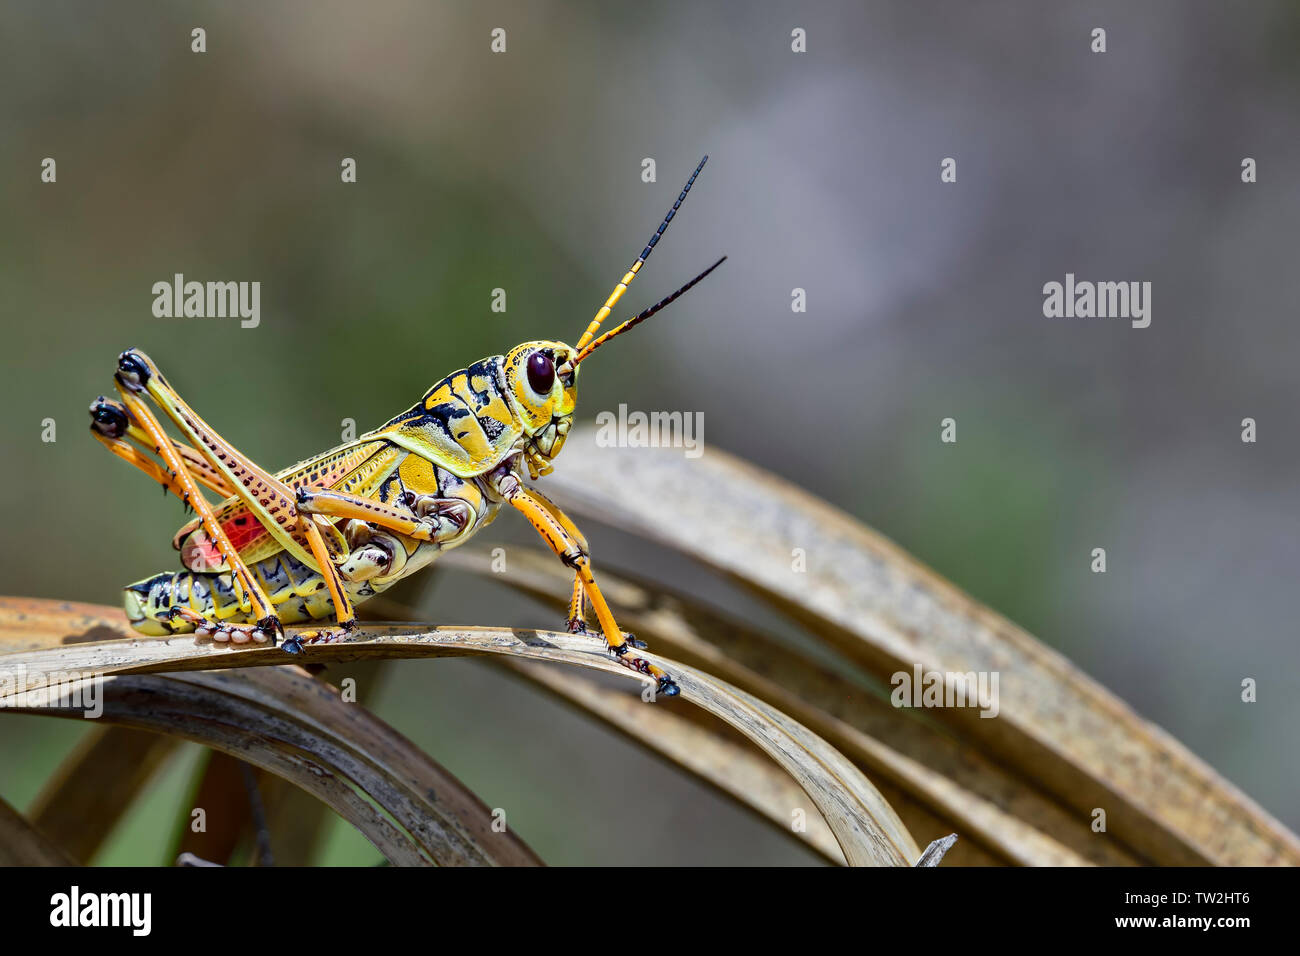 L'est magnifique lubber grasshopper est prêt à s'échapper de la scène. Banque D'Images